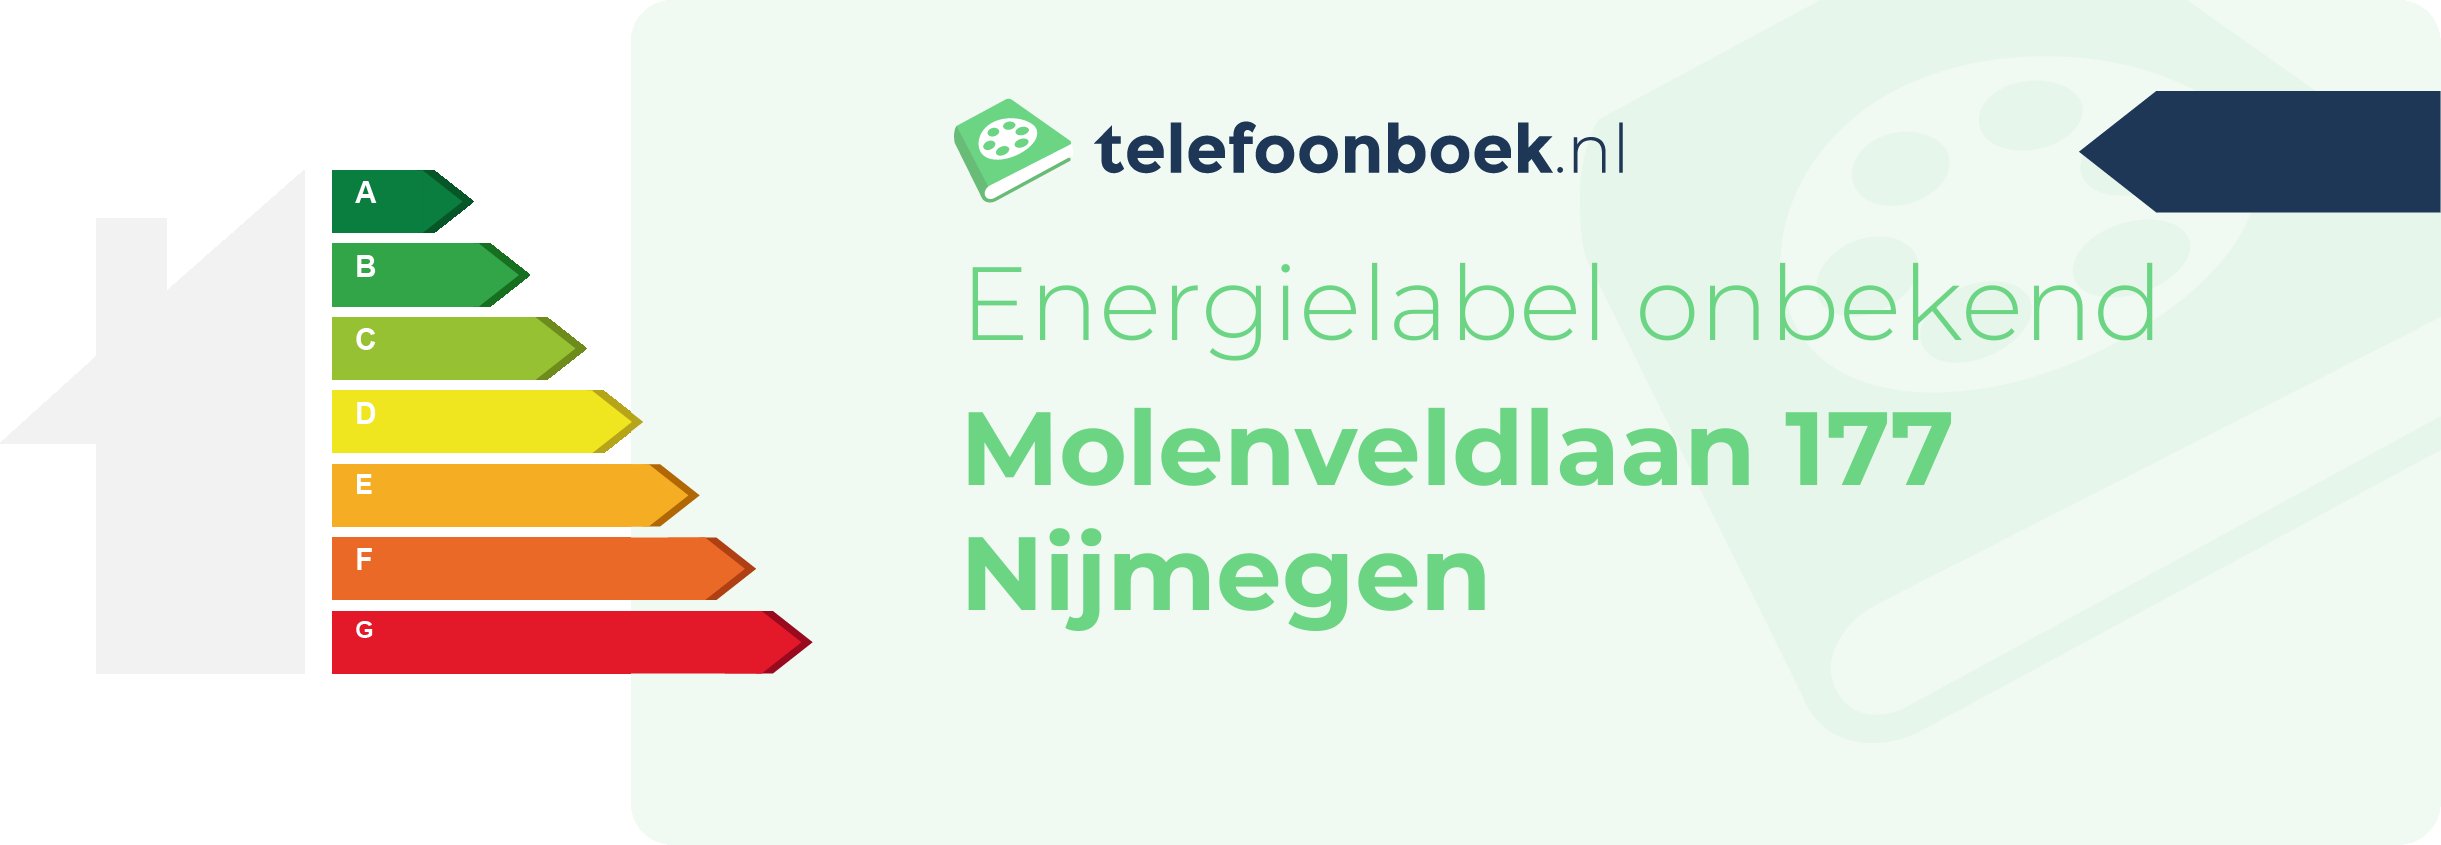 Energielabel Molenveldlaan 177 Nijmegen